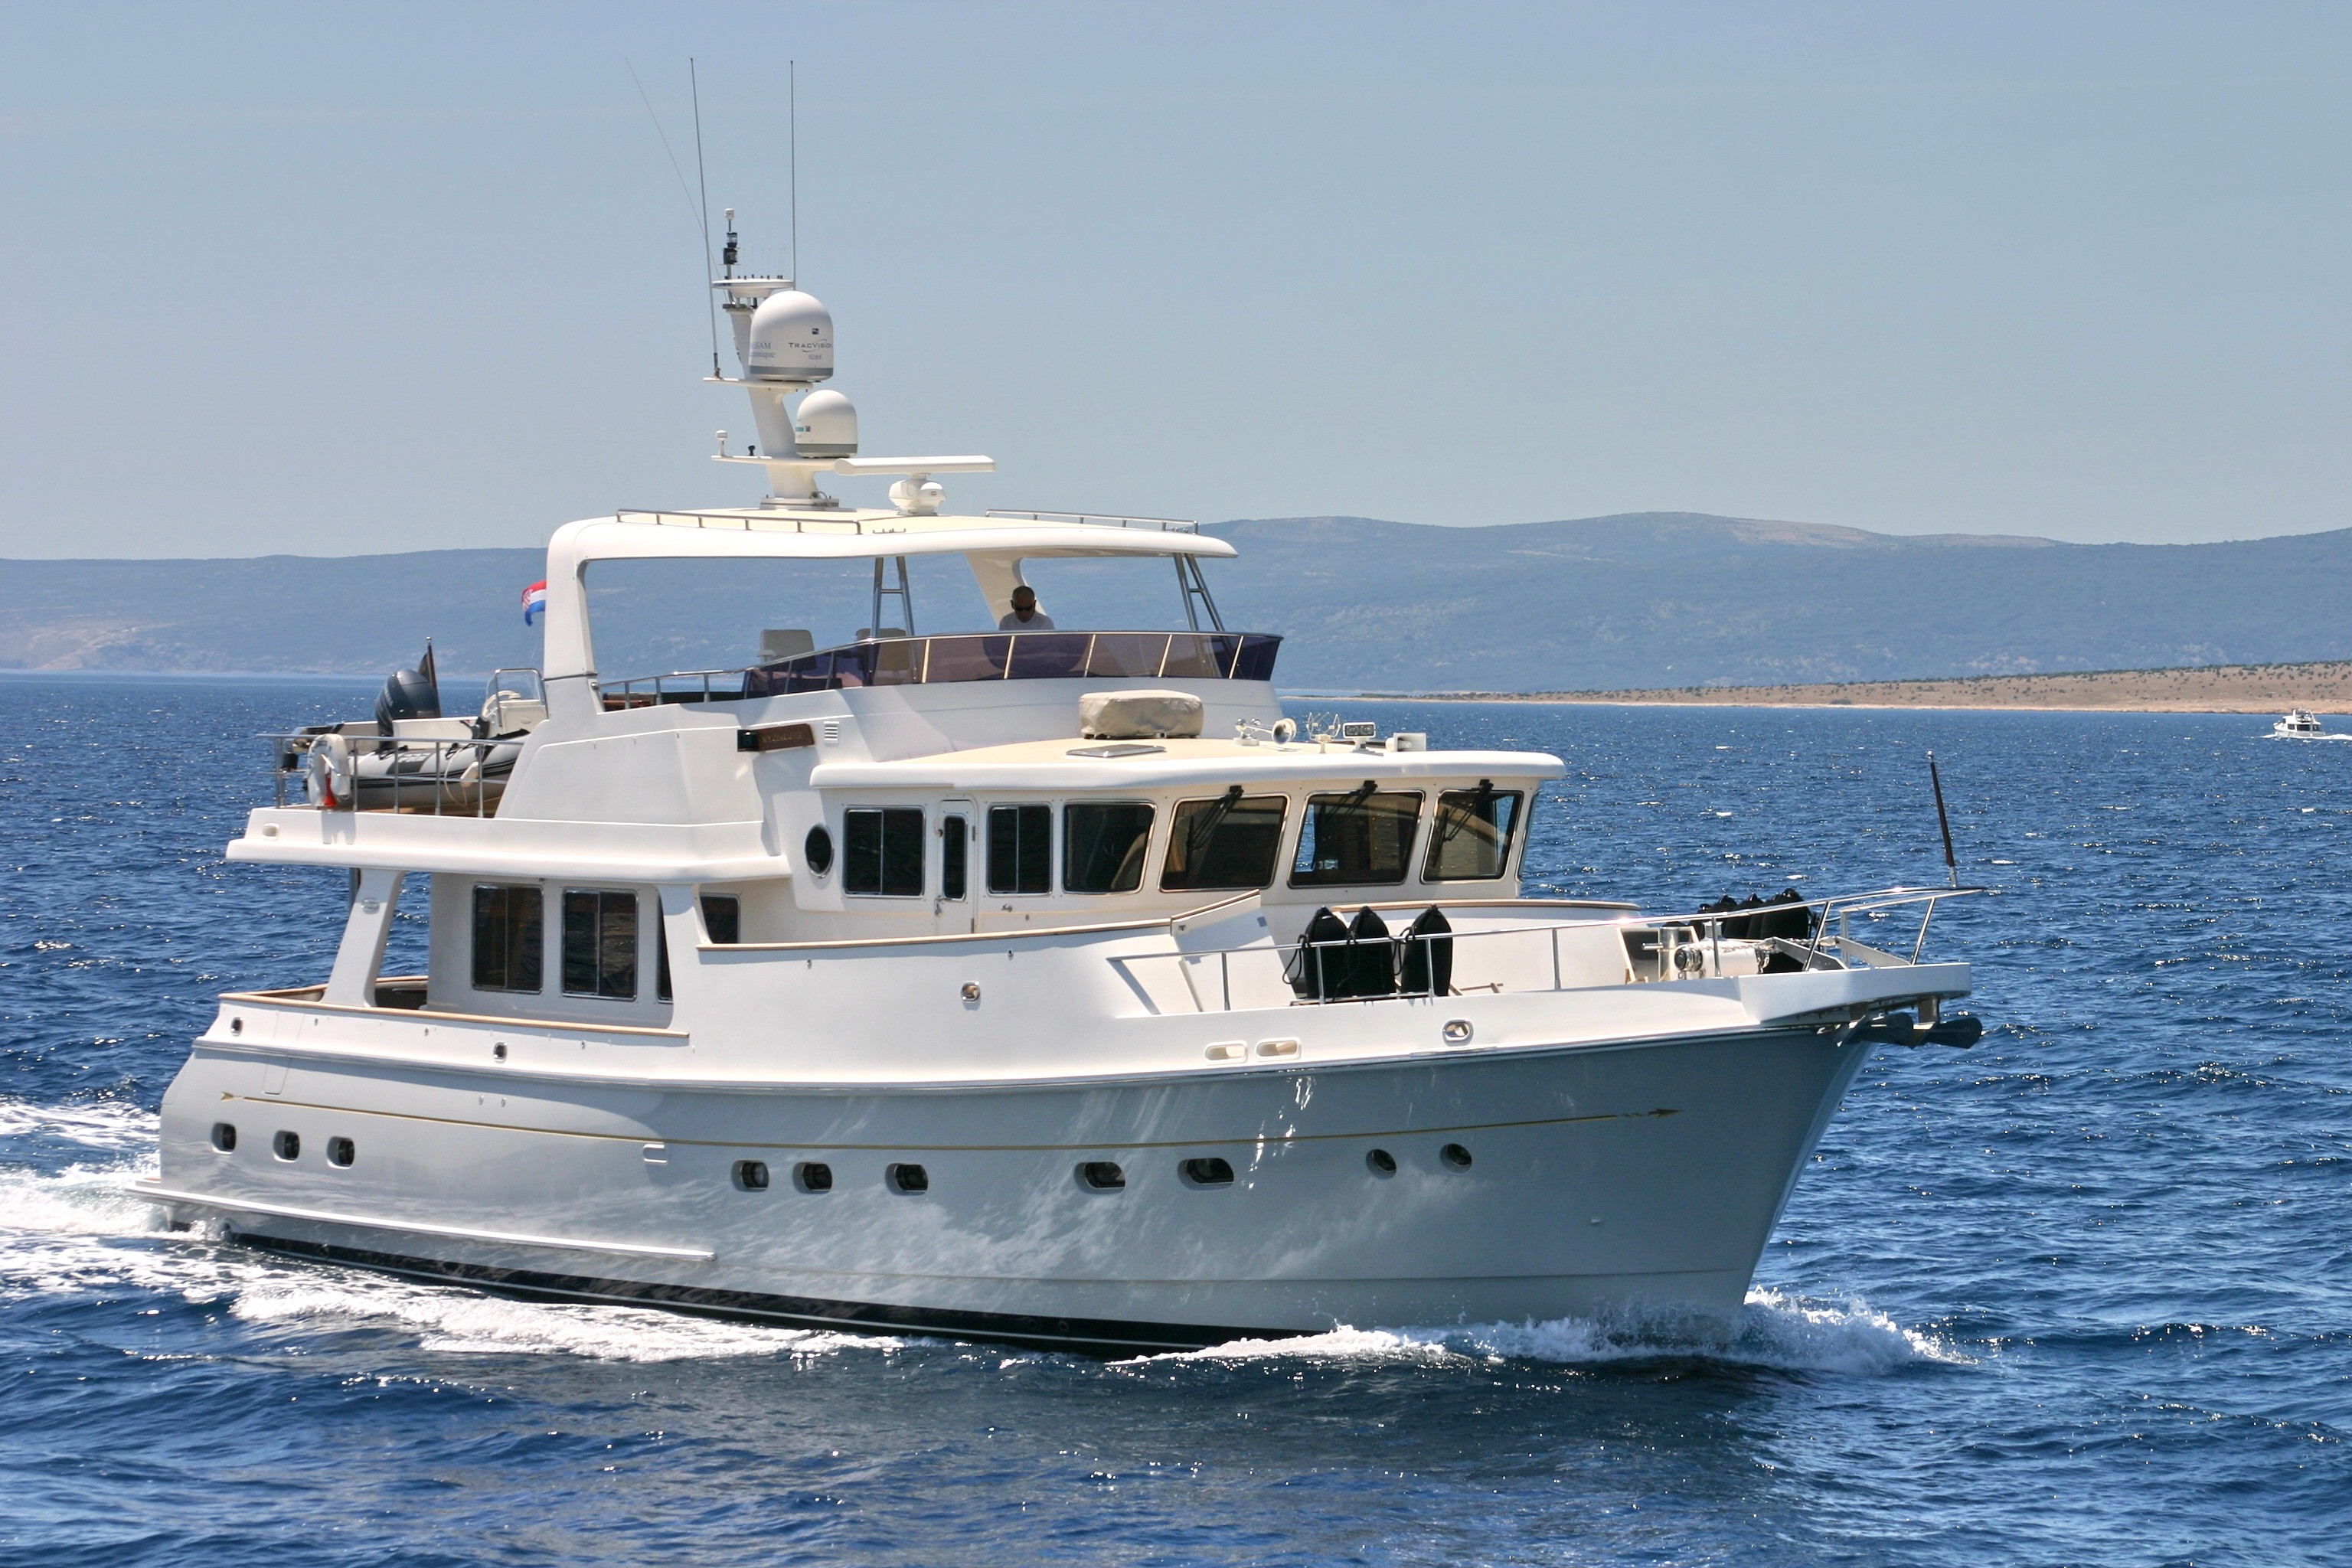 selene 66' trawler yacht